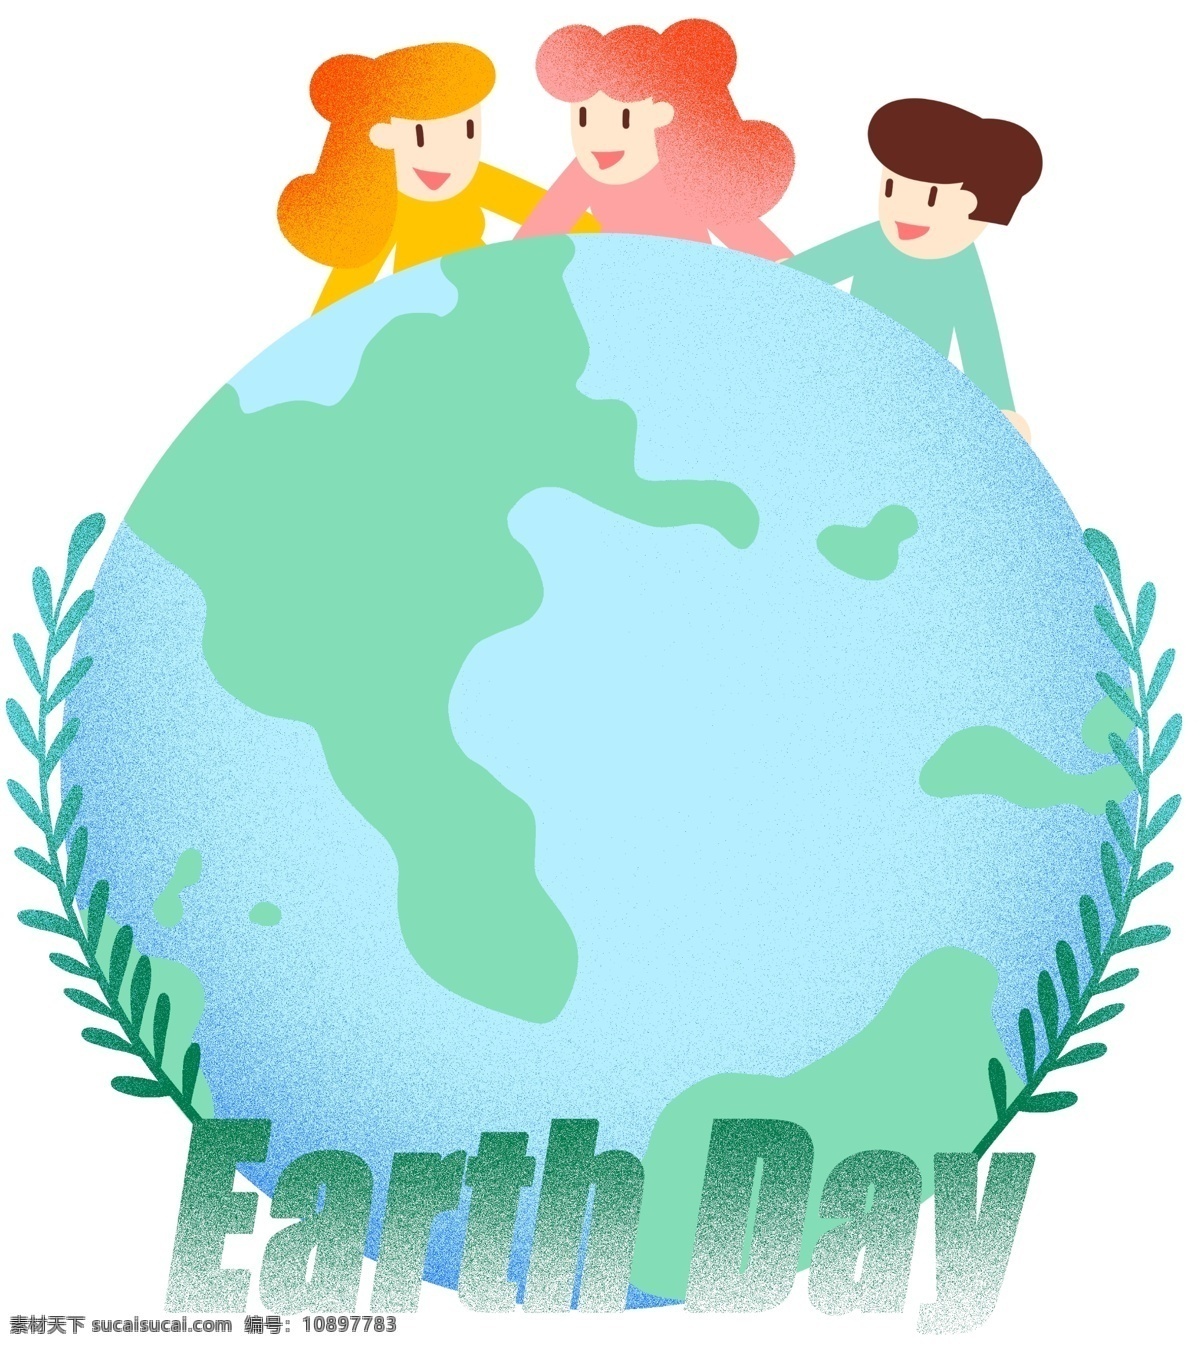 世界 地球日 绿叶 插画 保护地球 叶子 树木 种树 植树 浮云 大气层 地球 男孩女孩 环保 免扣png